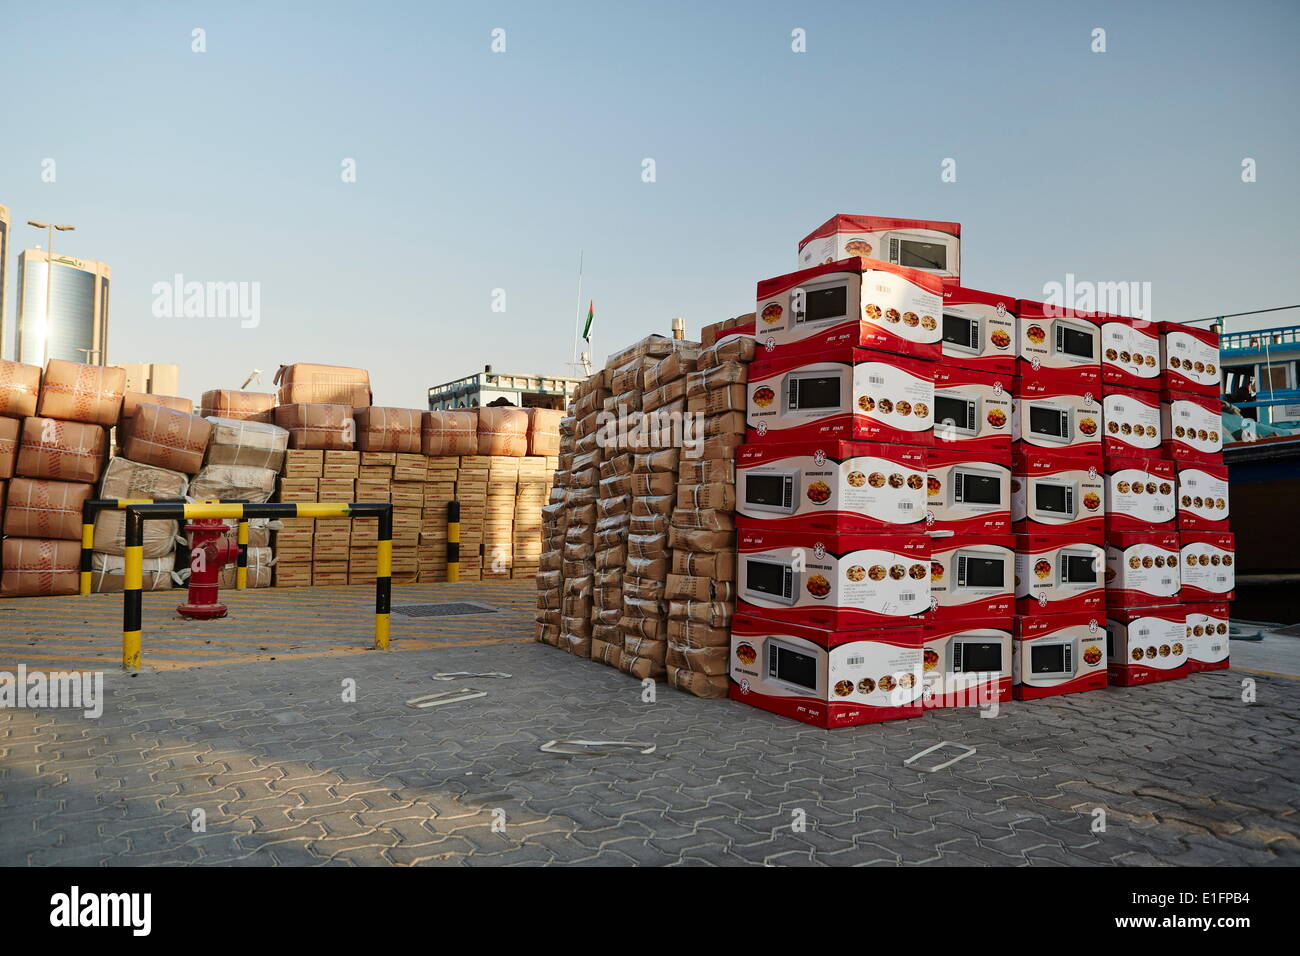 Port de libre-échange la Crique de Dubaï, de biens allant de chewing-gum pour les pneus de voiture, Dubaï, Émirats arabes unis, Moyen Orient Banque D'Images